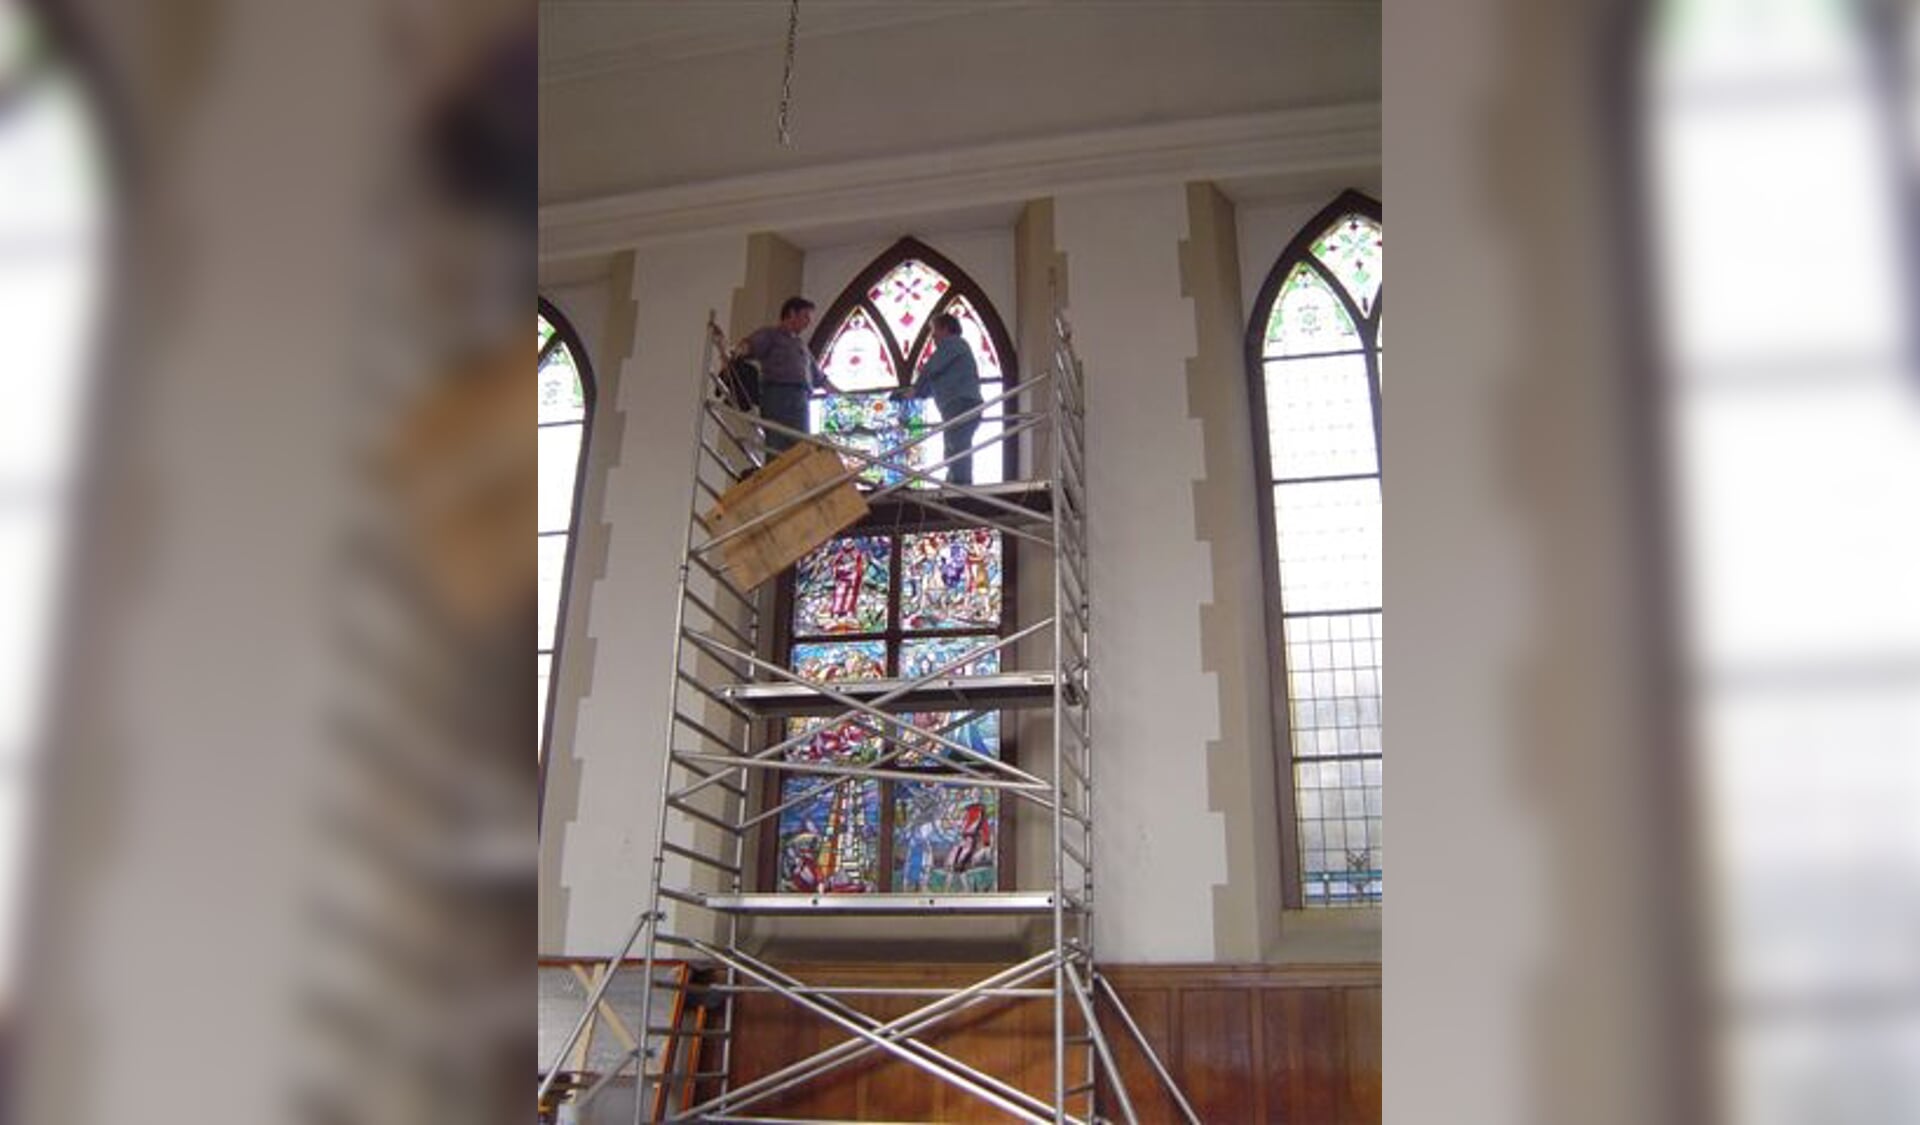 De ramen werden in 2010 weggehaald uit de kerk